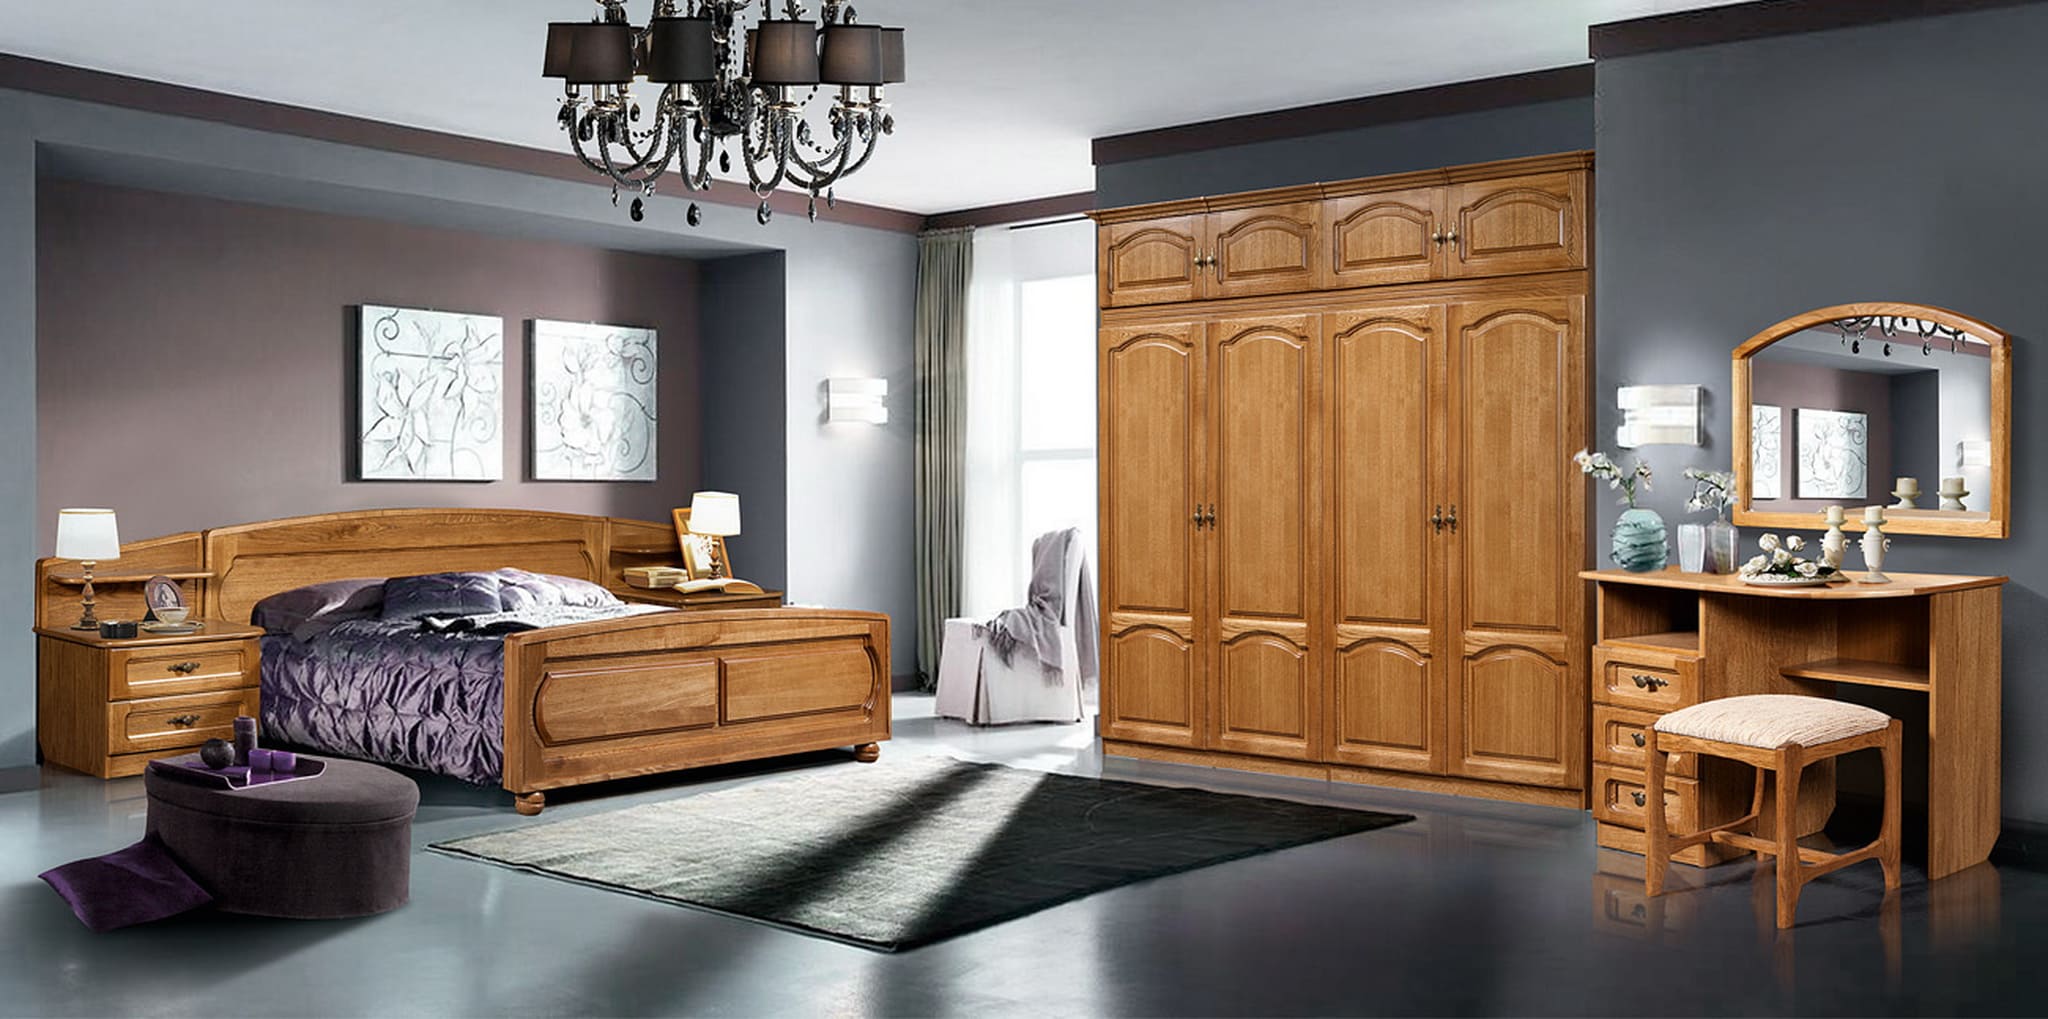 Набор мебели для спальни "КУПАВА-1" ГМ 8420,ДУБ б/м  "P-43" дуб натуральный